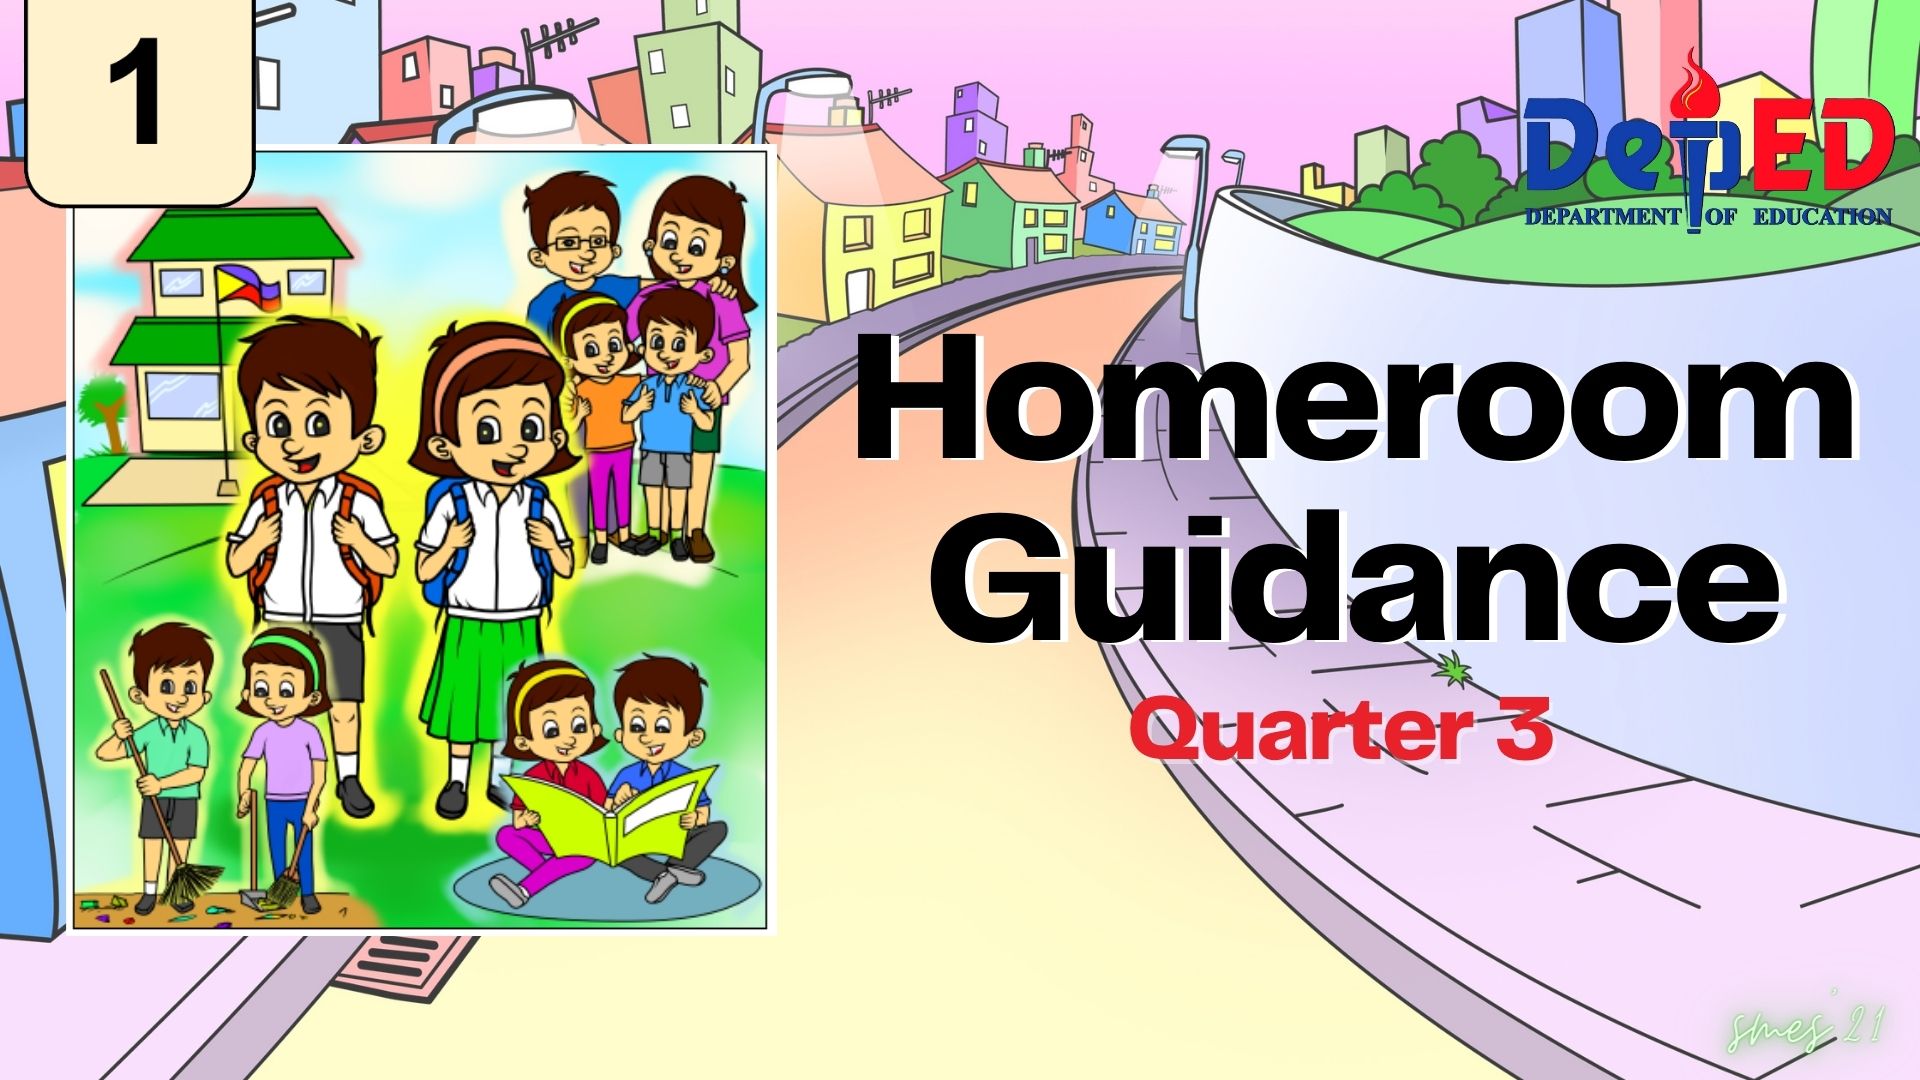 G1 - Homeroom Guidance Quarter 3 copy 2